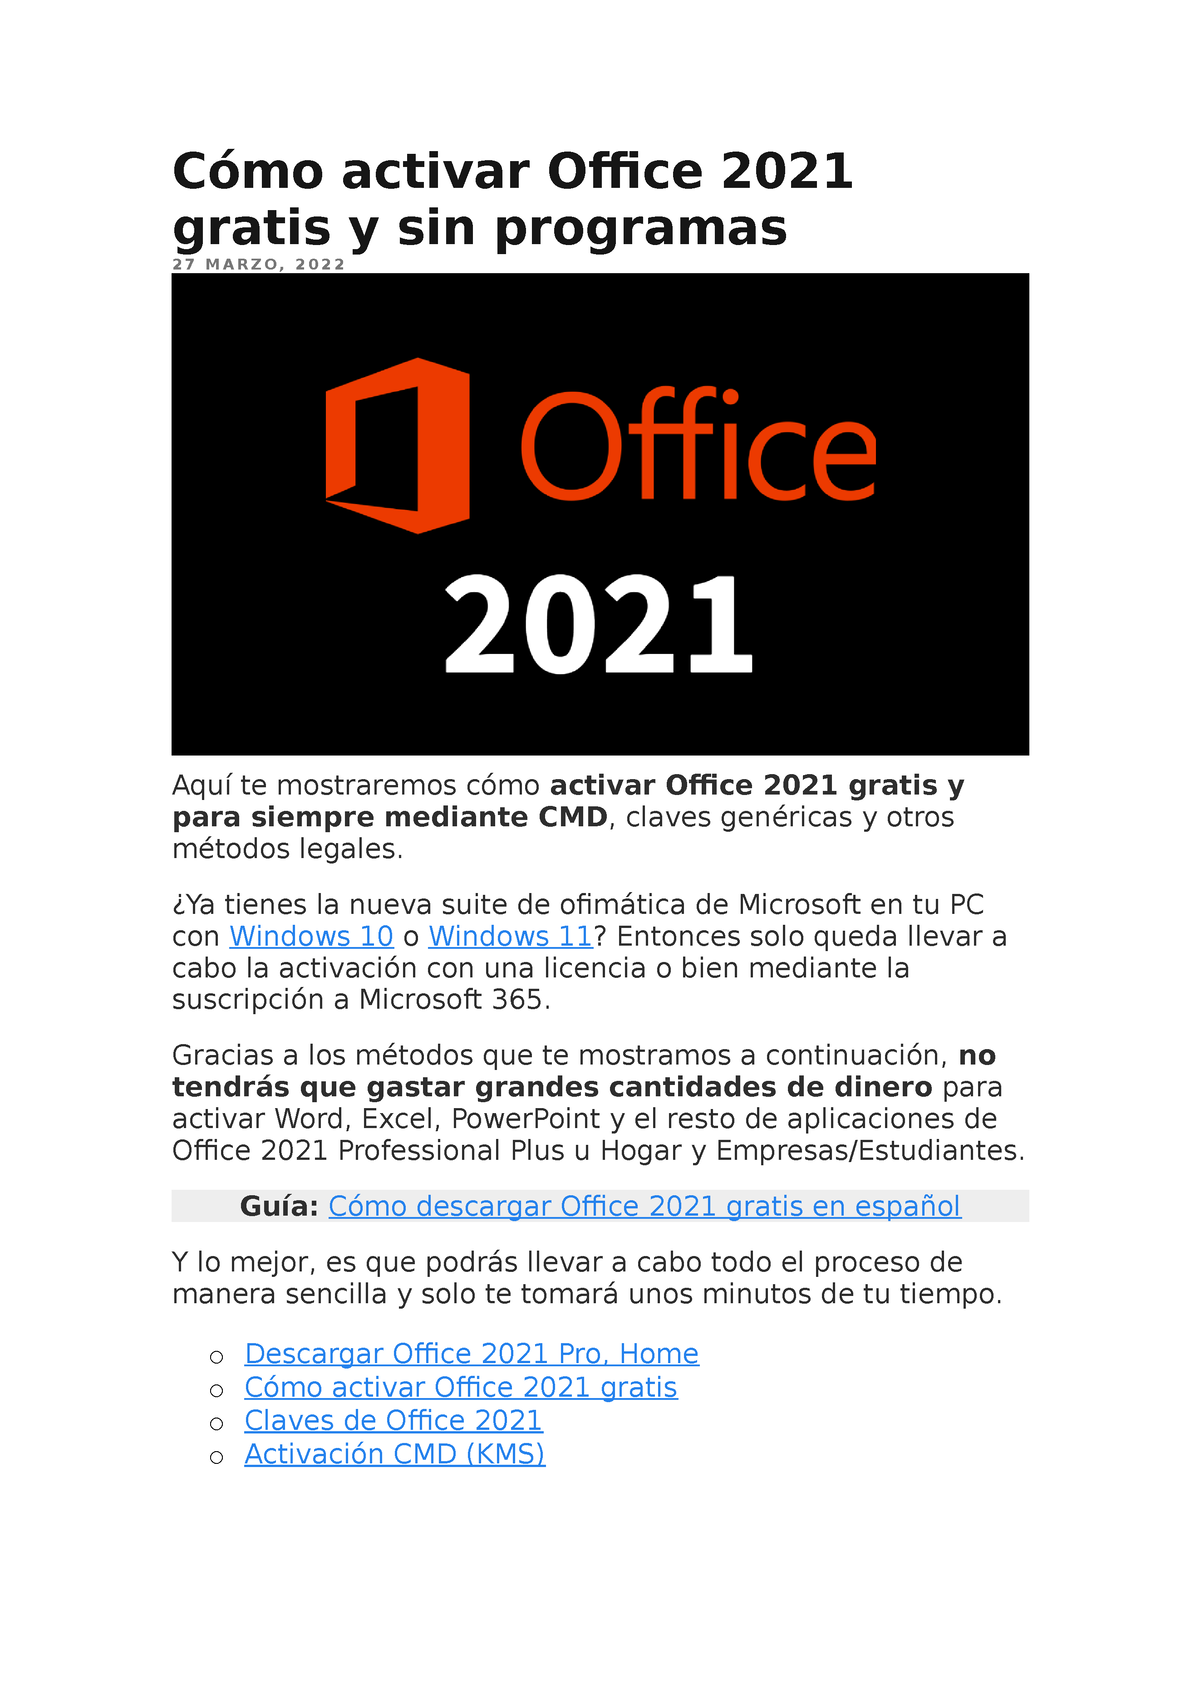 Cómo activar Office 2021 gratis y sin programas - ¿Ya tienes la nueva suite  de ofimática de - Studocu